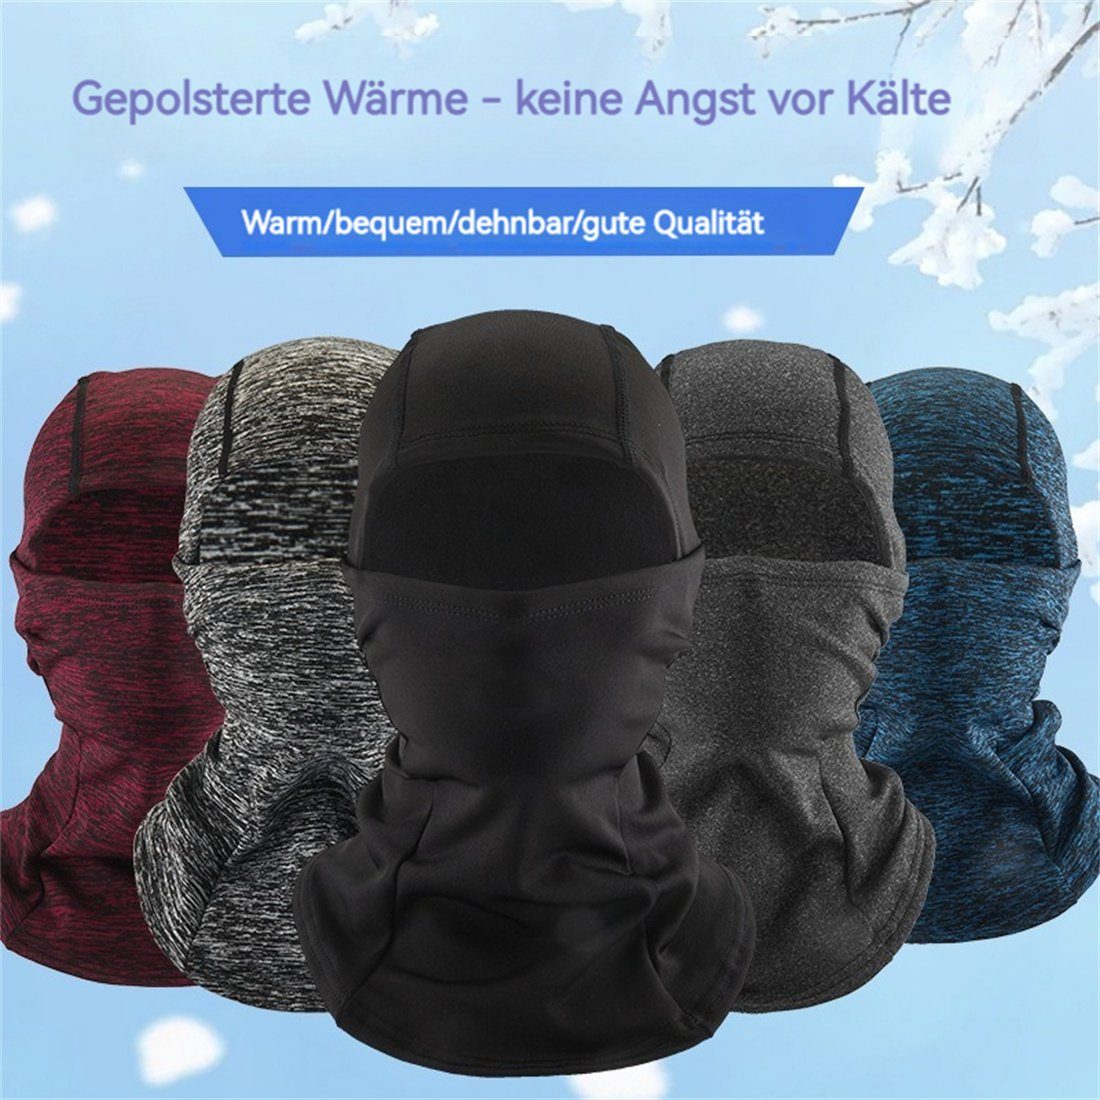 kalte Ski Maske, warme Winter Radfahren Kopfbedeckung, Rot DÖRÖY Sturmhaube unisex